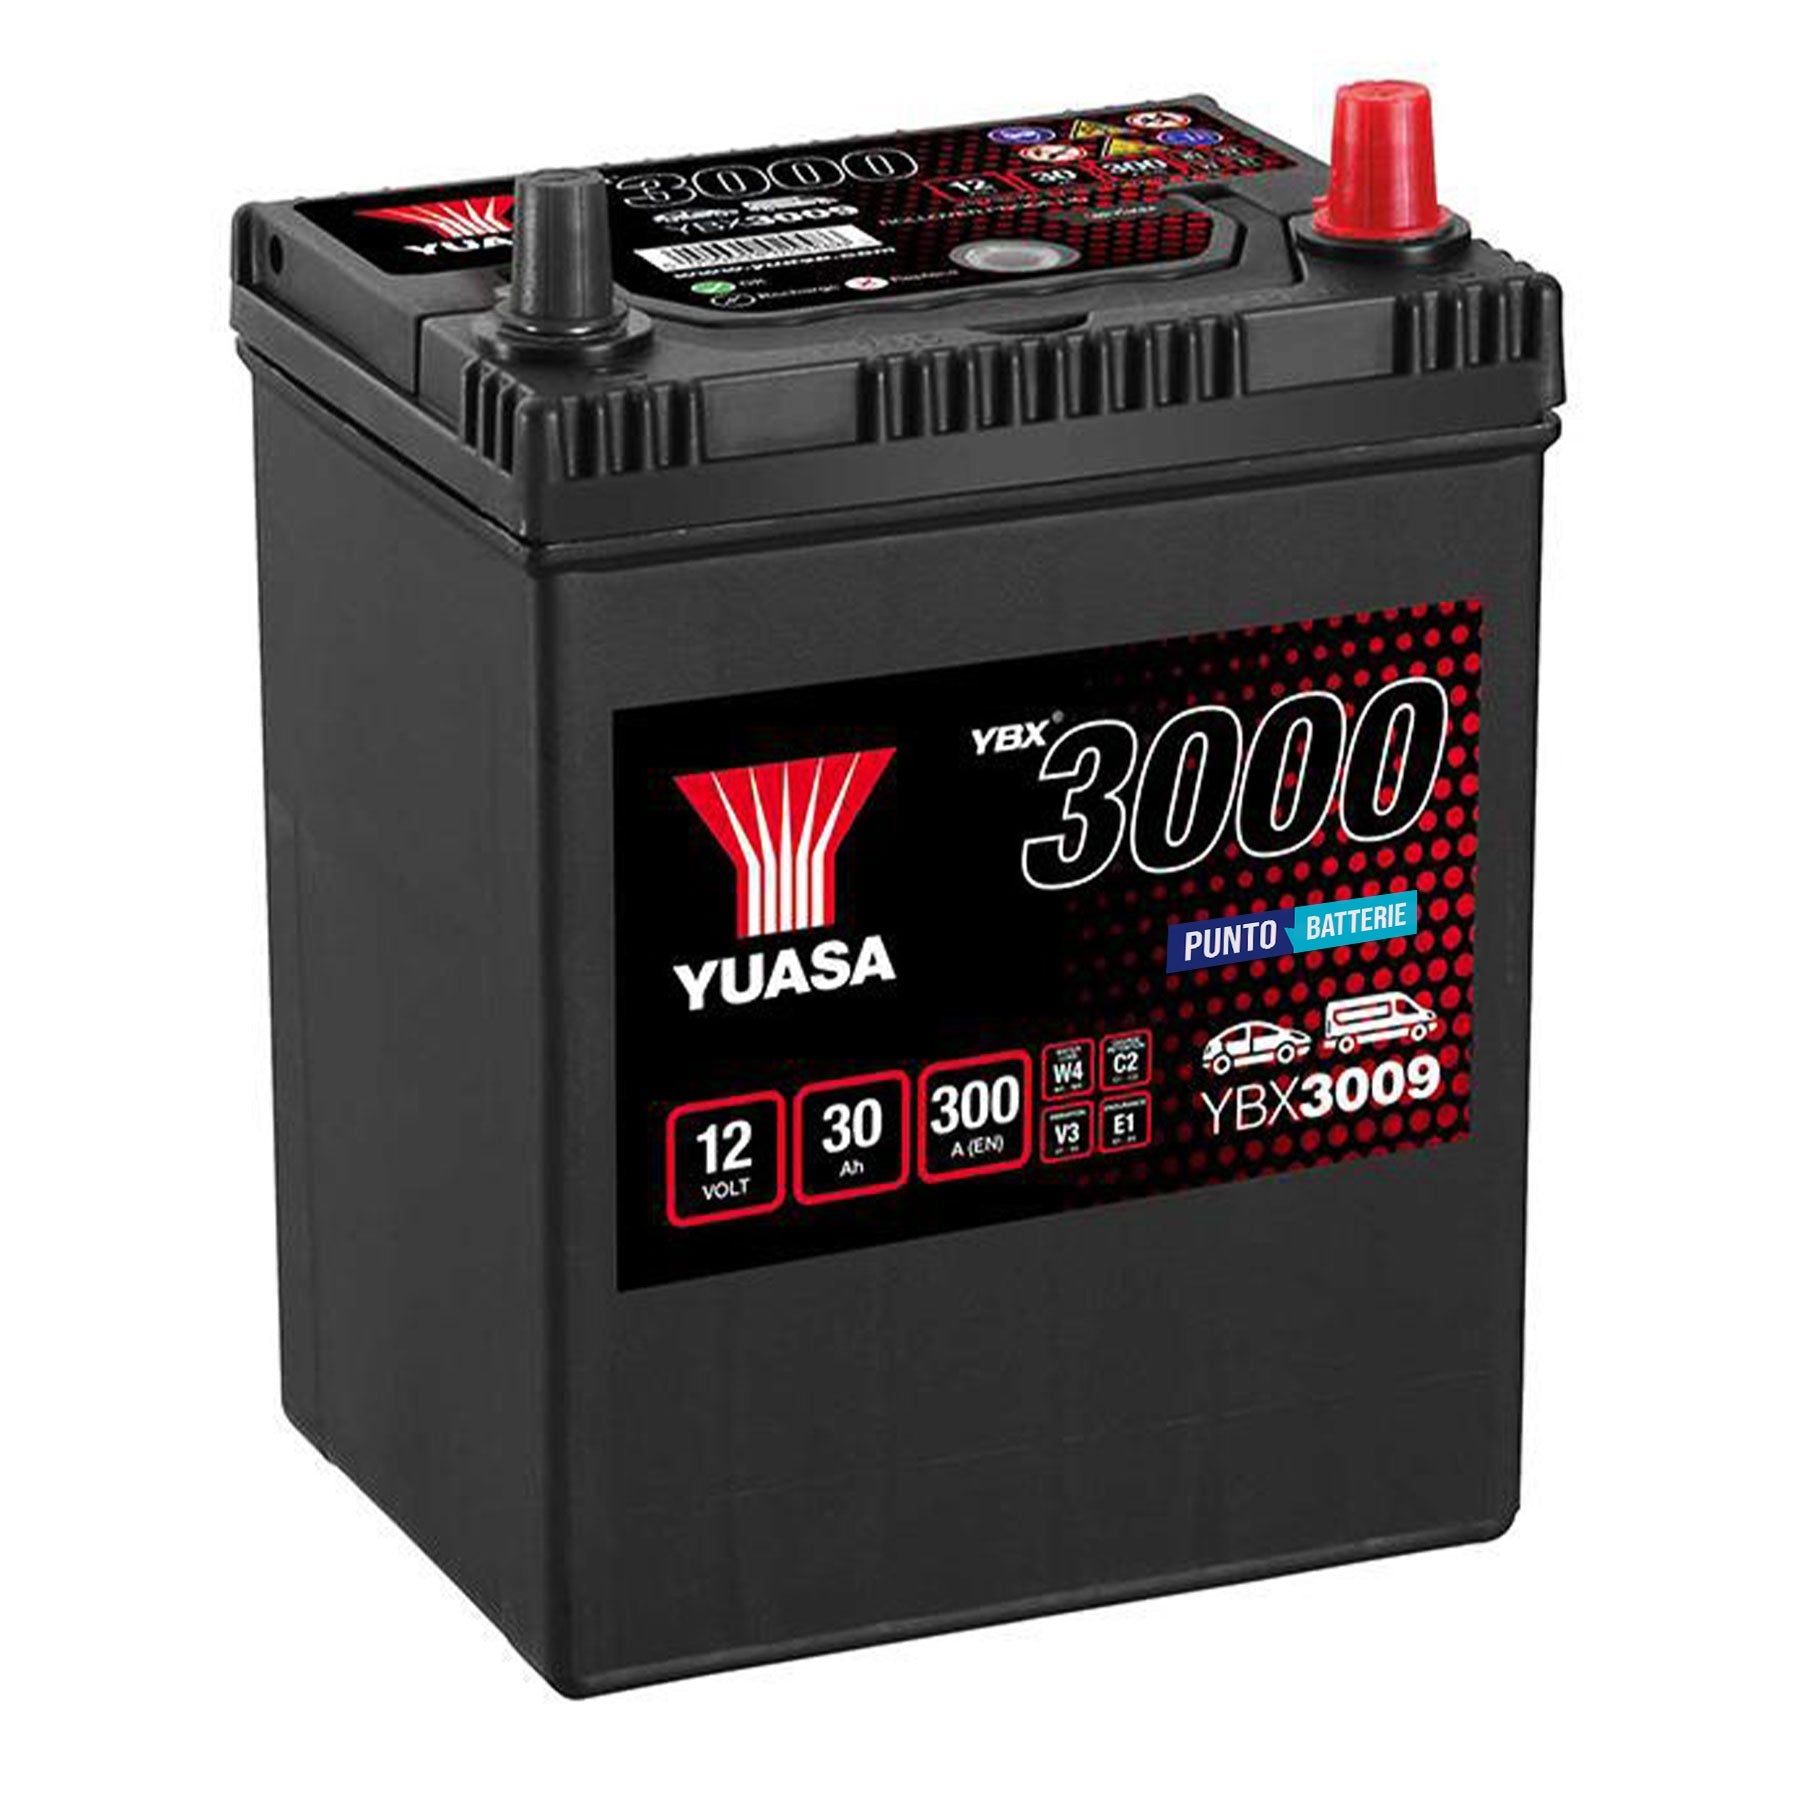 Batteria originale Yuasa YBX3000 YBX3009, dimensioni 167 x 129 x 224, polo positivo a destra, 12 volt, 30 amperora, 300 ampere. Batteria per auto e veicoli leggeri.